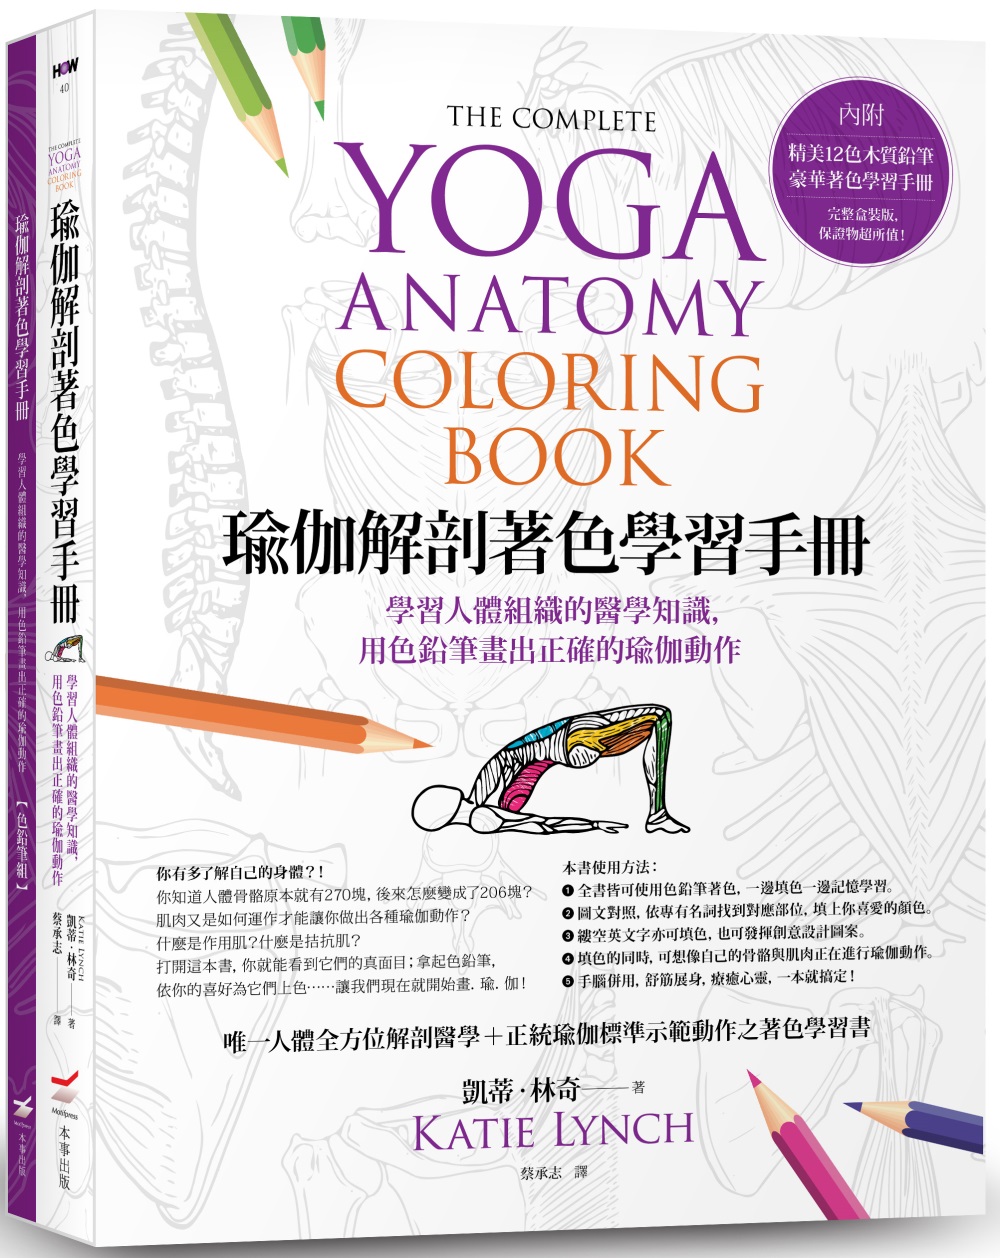 瑜伽解剖著色學習手冊(附12色彩色鉛筆)：學習人體組織的醫學知識，用色鉛筆畫出正確的瑜伽動作